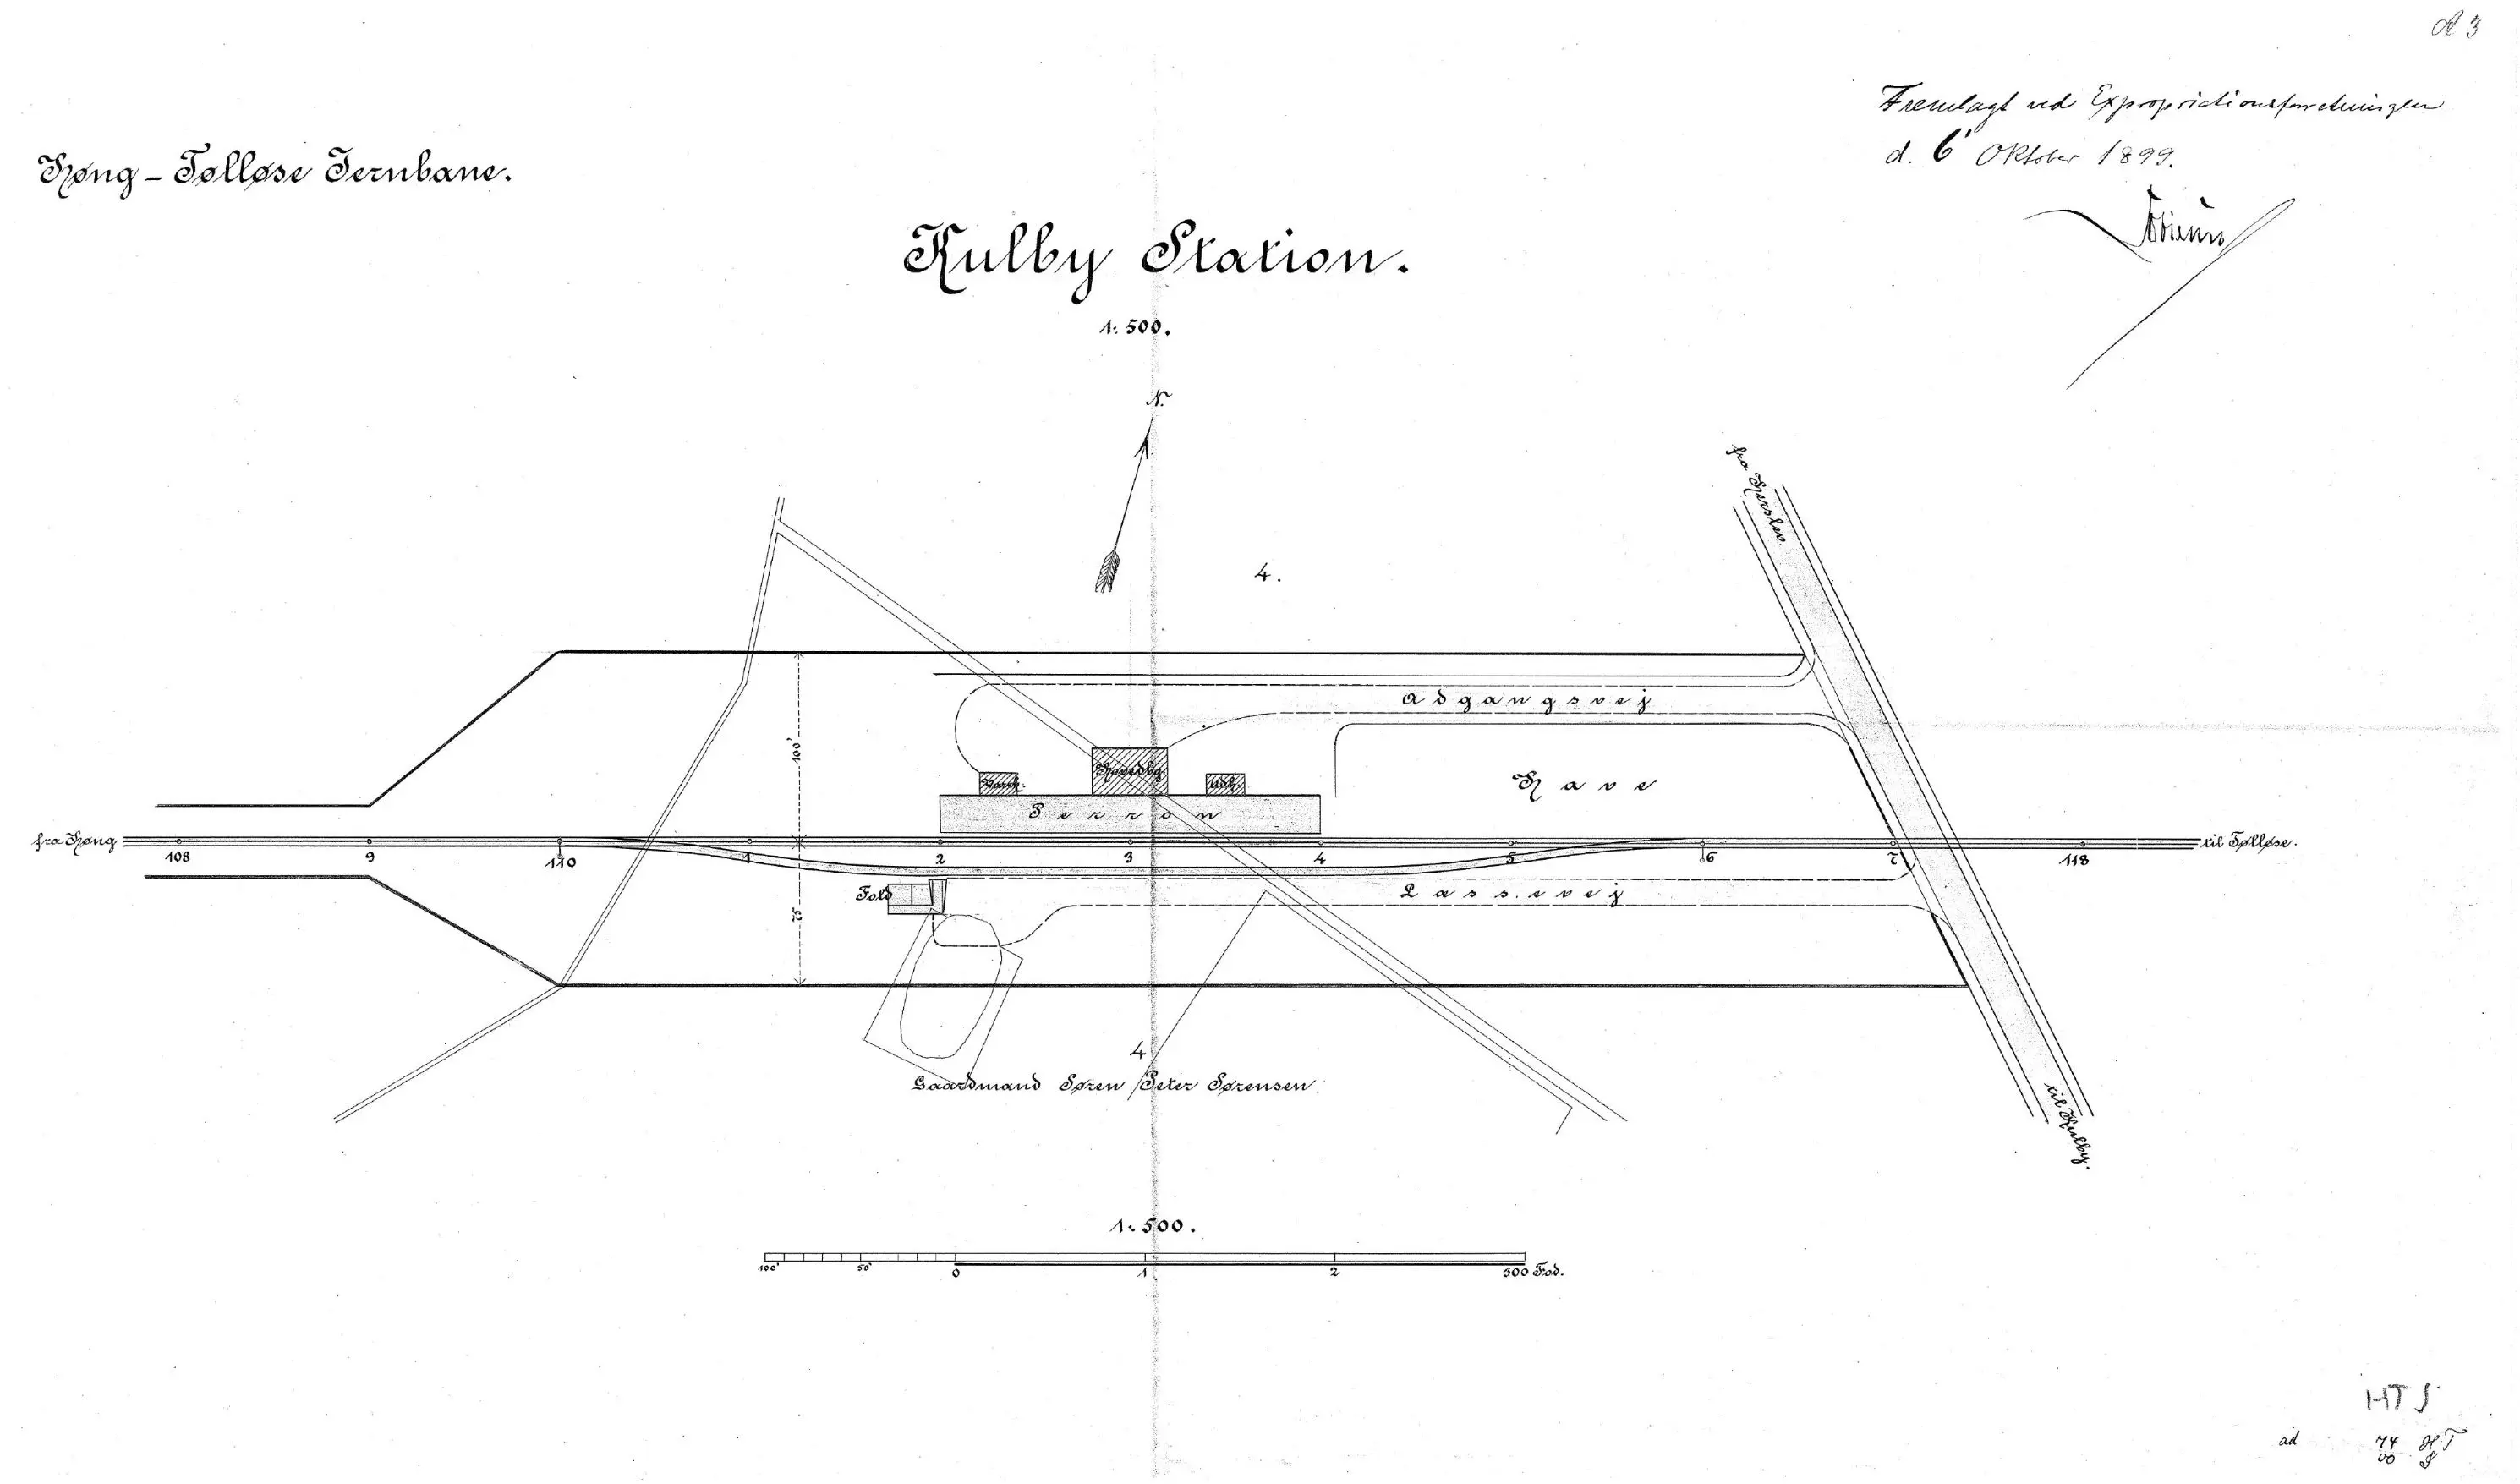 Sporplan af Kulby Station.